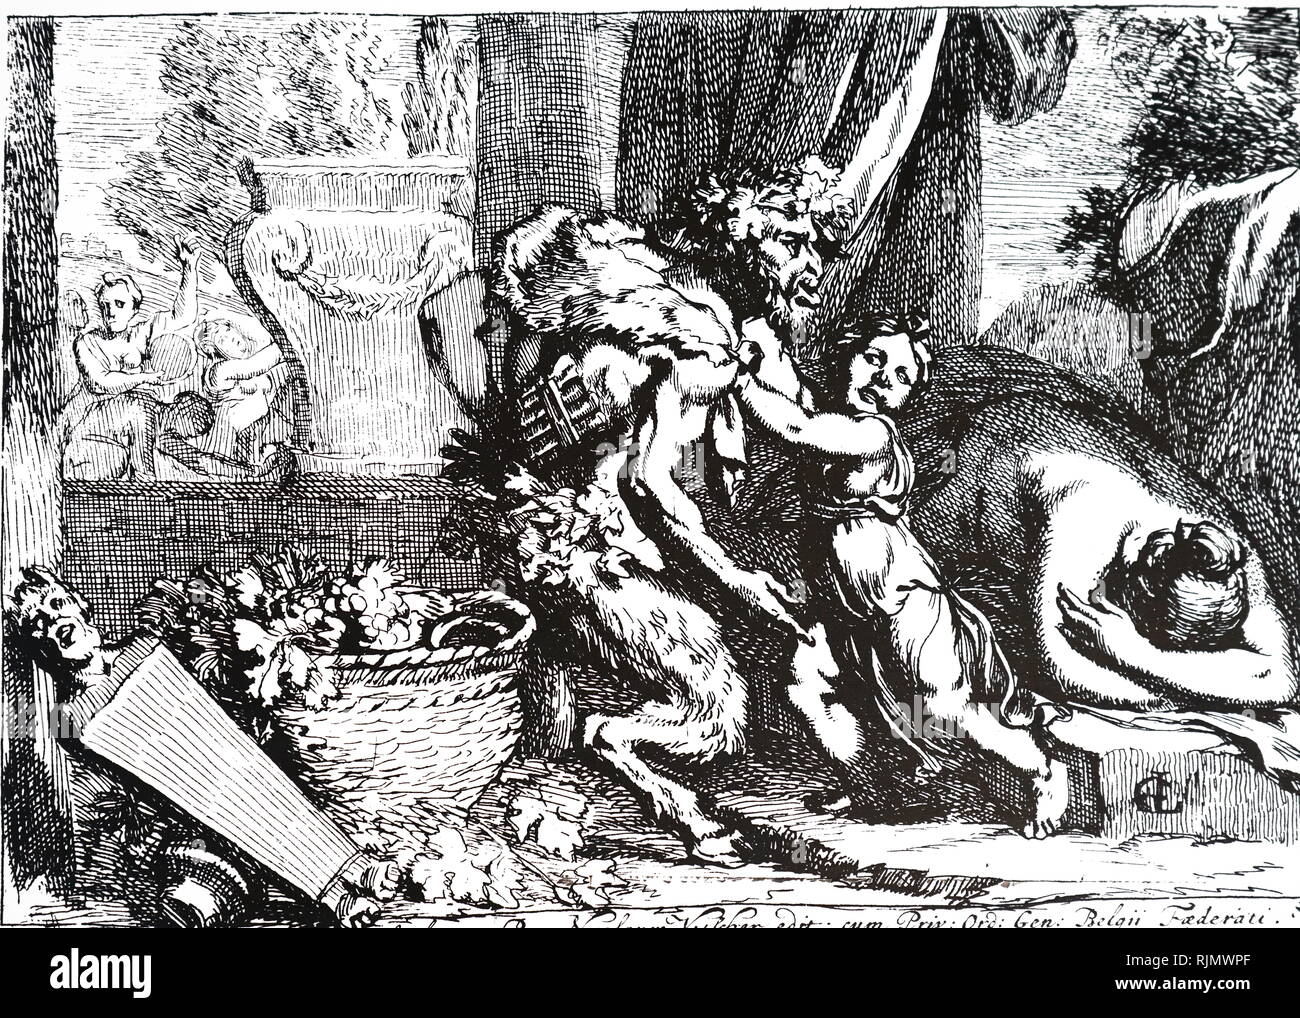 Bacchante mit silen; Radierung von Gerard de Lairesse (1641 - 1711). In der Griechischen Mythologie eine bacchante oder Maenad, war eine weibliche Anhängerin des Dionysos. Silen war ein Begleiter und Lehrer zu der Wein Gottes Dionysos. Stockfoto